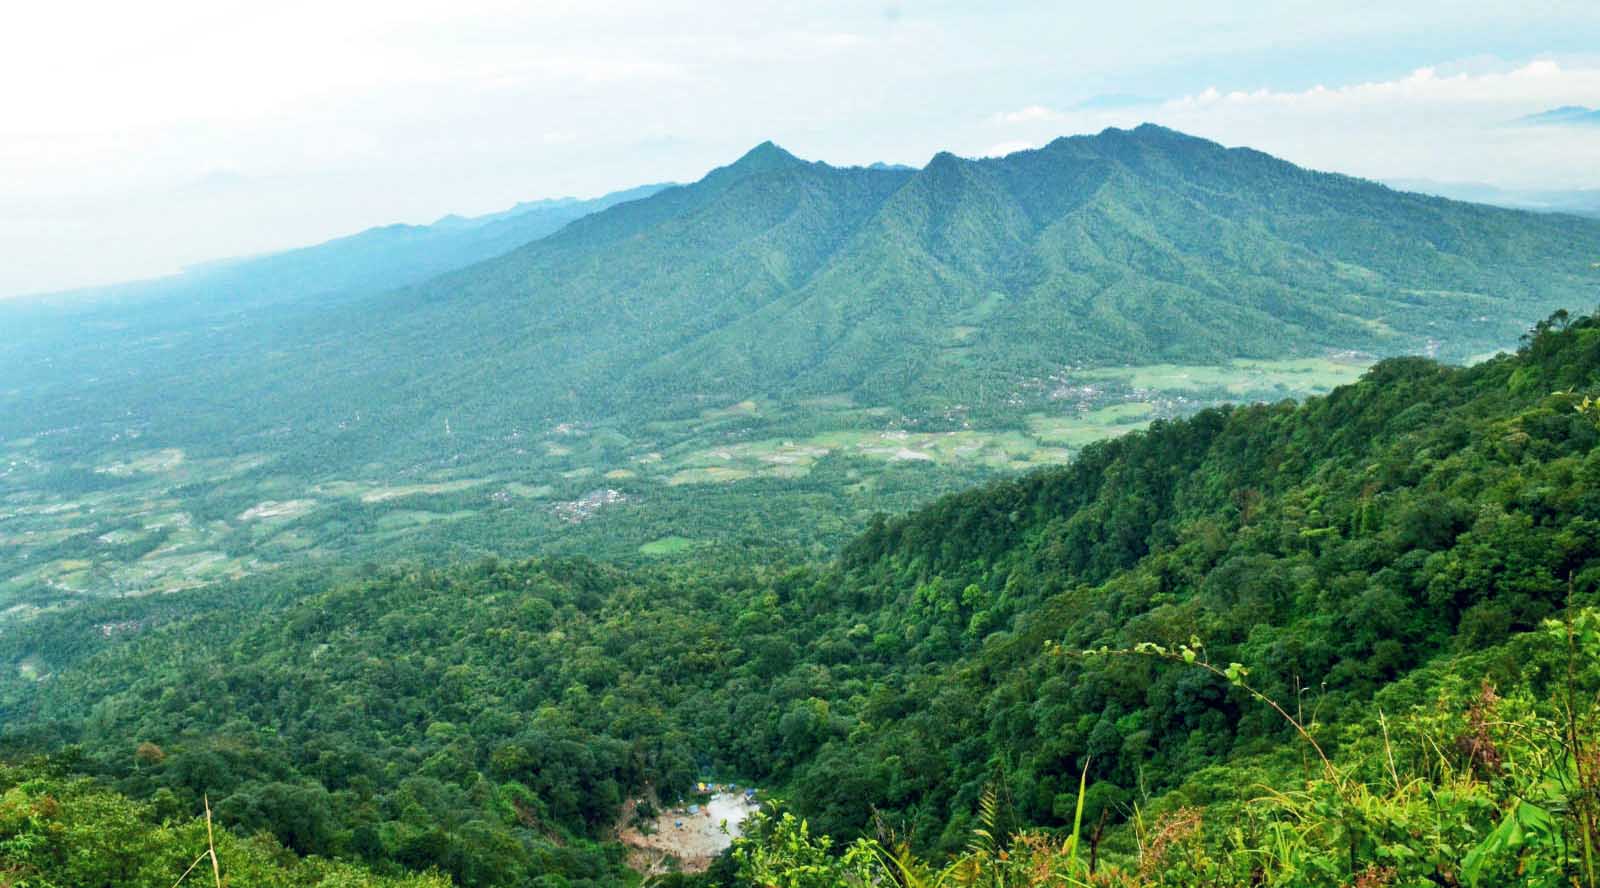 Bikin Betah Selimutan di Ranjang, Inilah Kecamatan Paling Dingin di Kabupaten Pandeglang